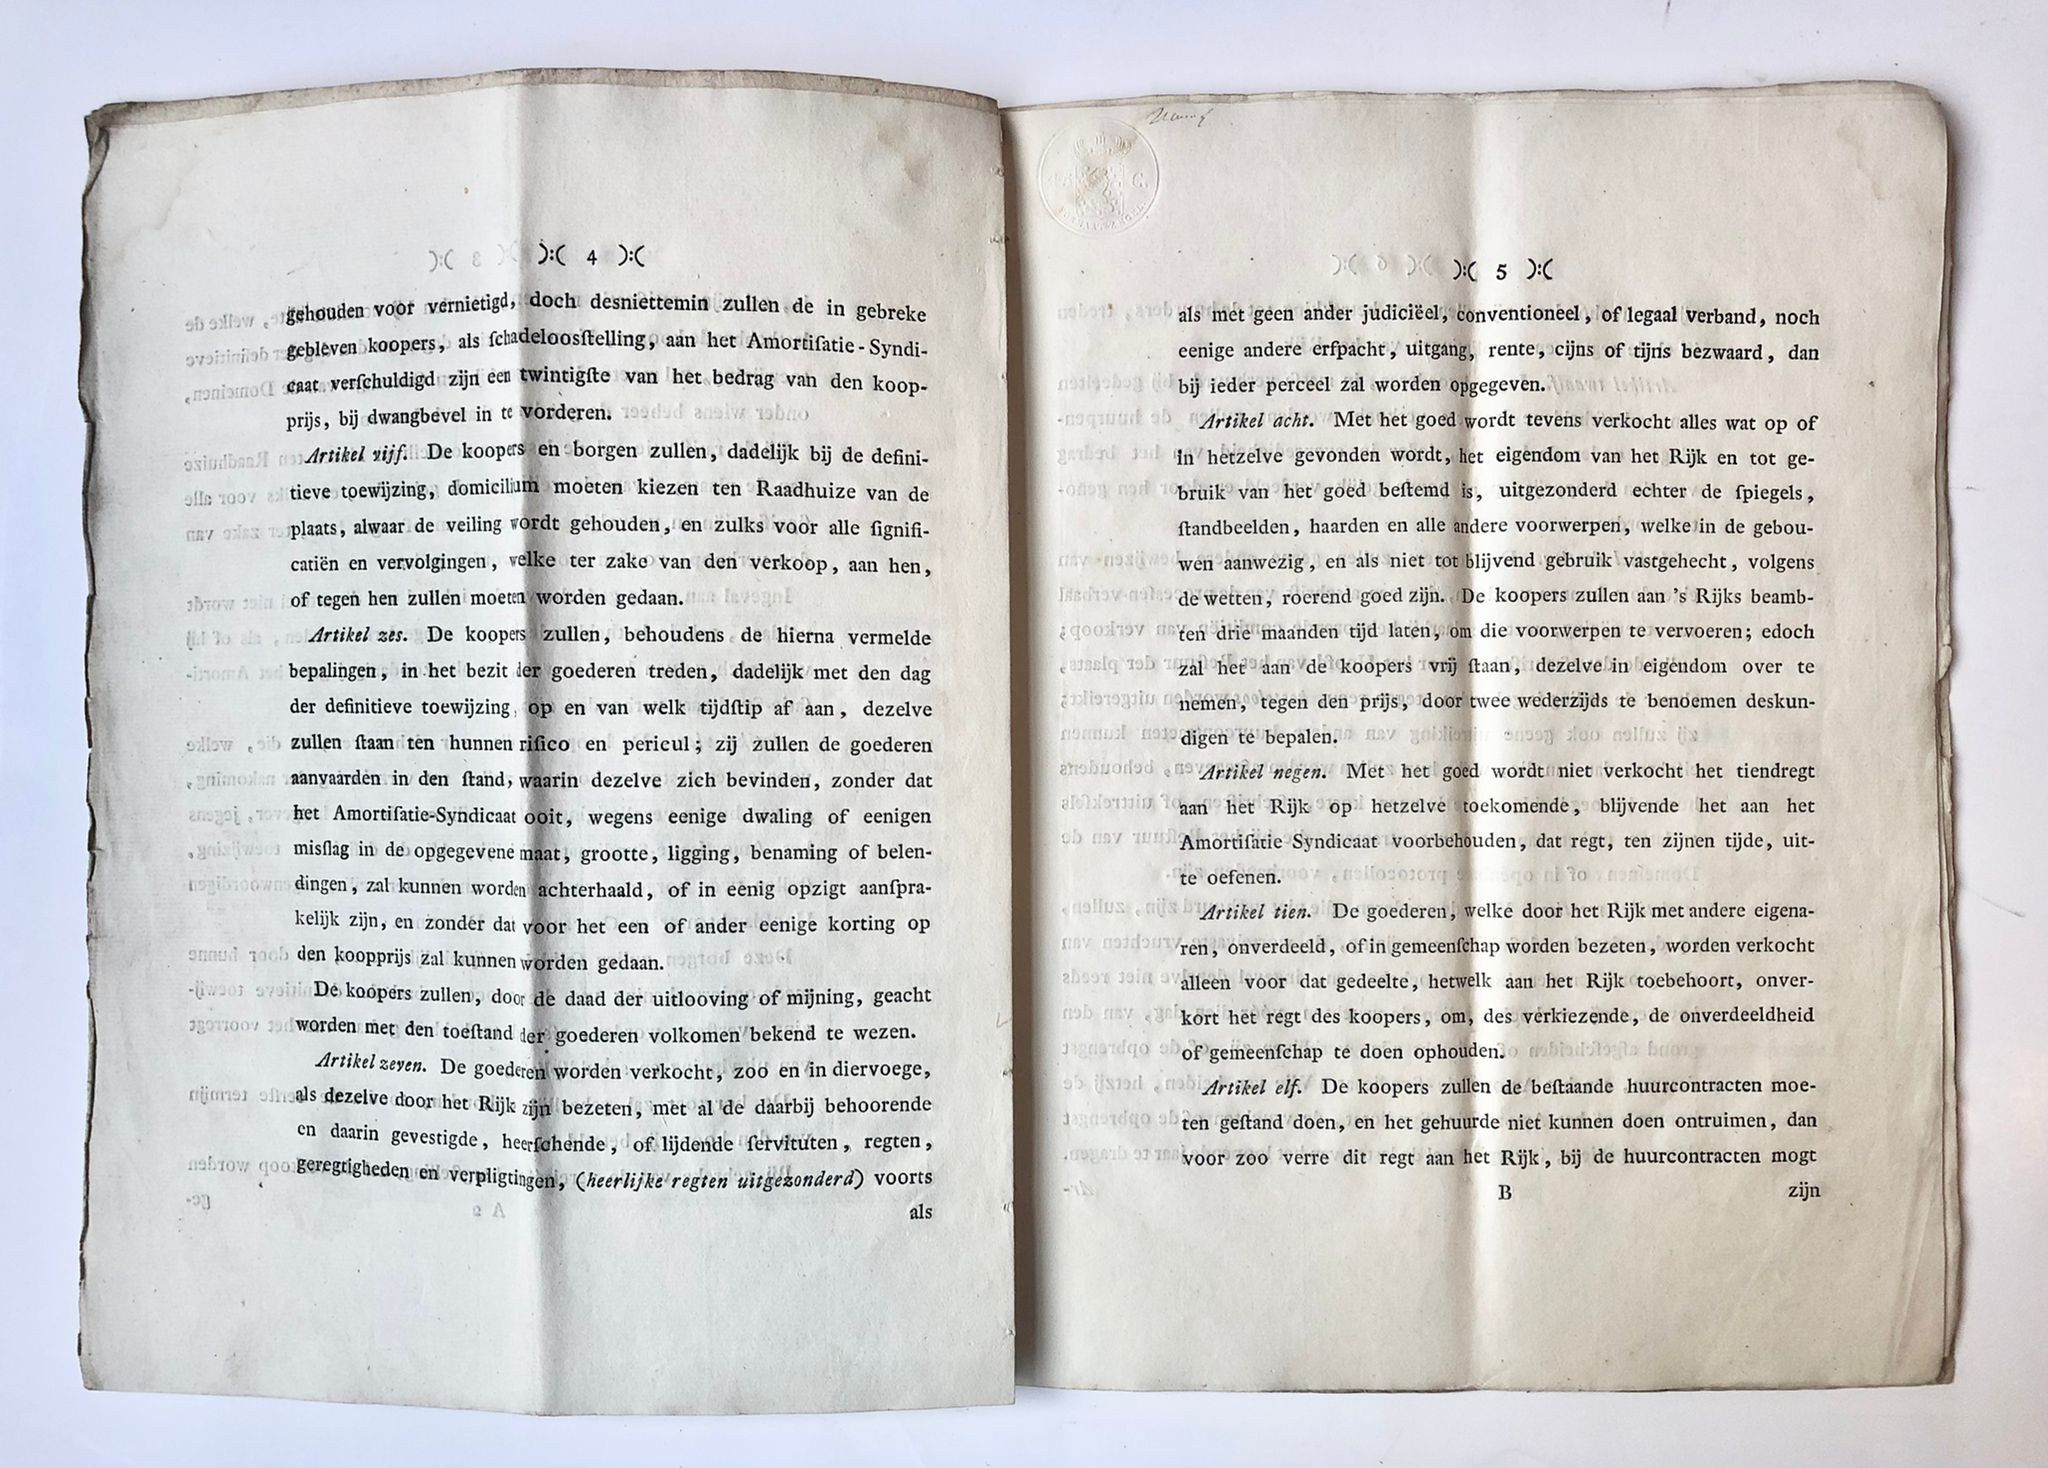 [Legal printed publication 1827] Proces verbaal van toewijzing aan Cornelis van Dijk Az te Linschoten van 7 bunders land op het IJsselveld, afkomstig uit Domeingoederen, 1827. 22 pag., deels gedrukt, deels in handschrift.